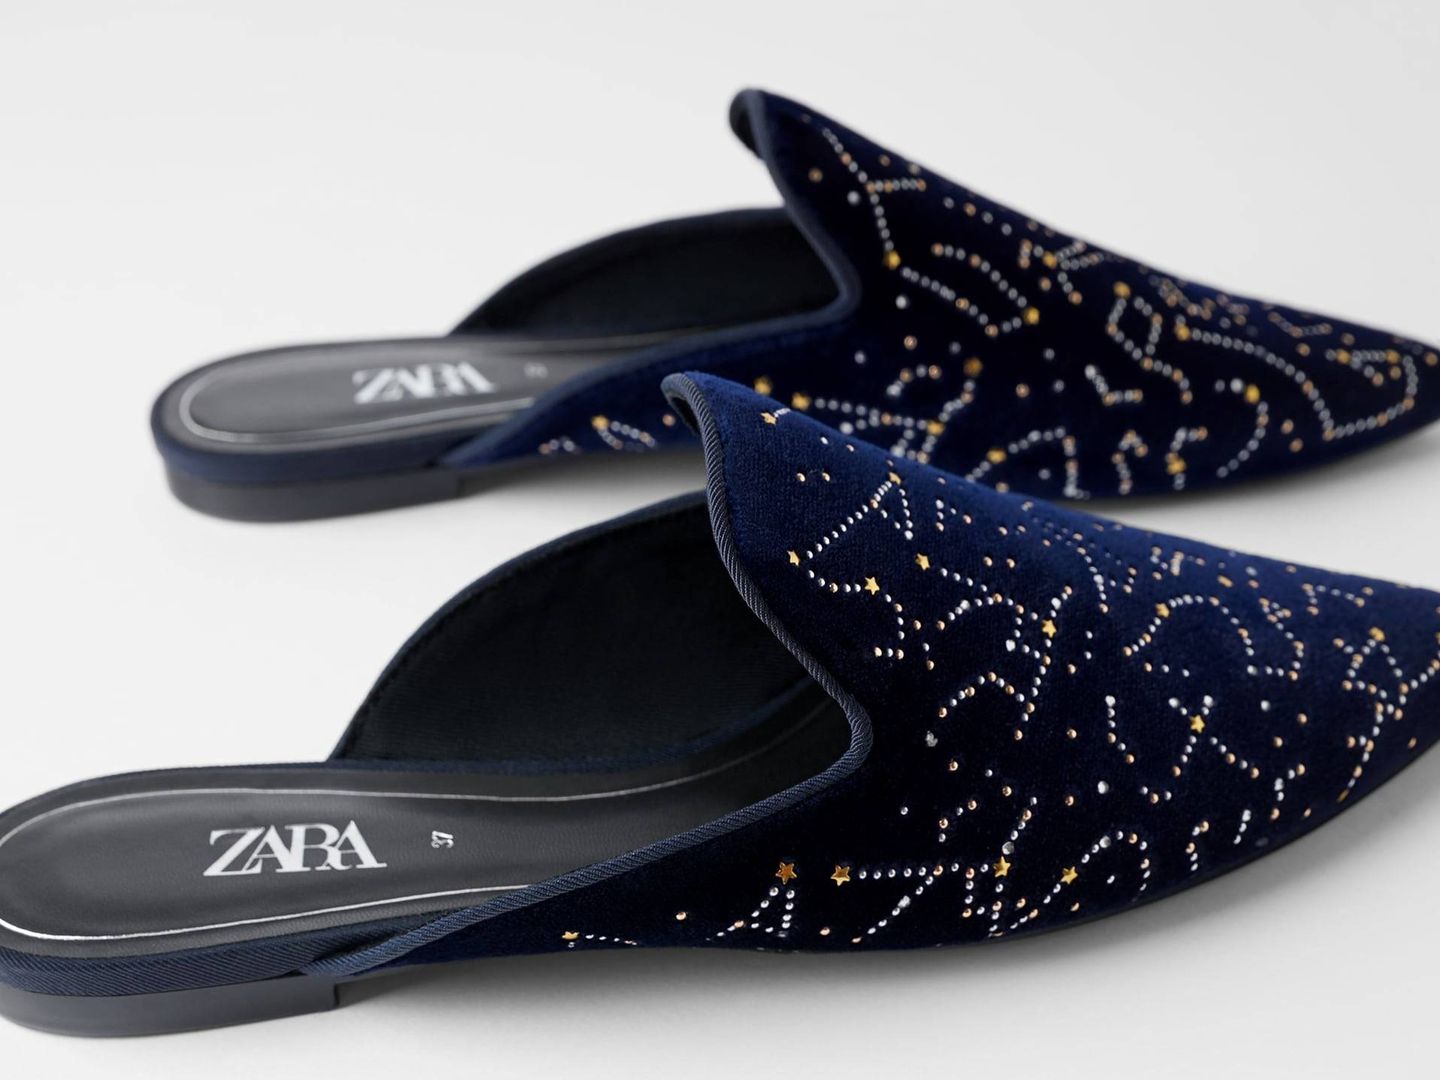 Zapatos mule con constelaciones. (Cortesía)